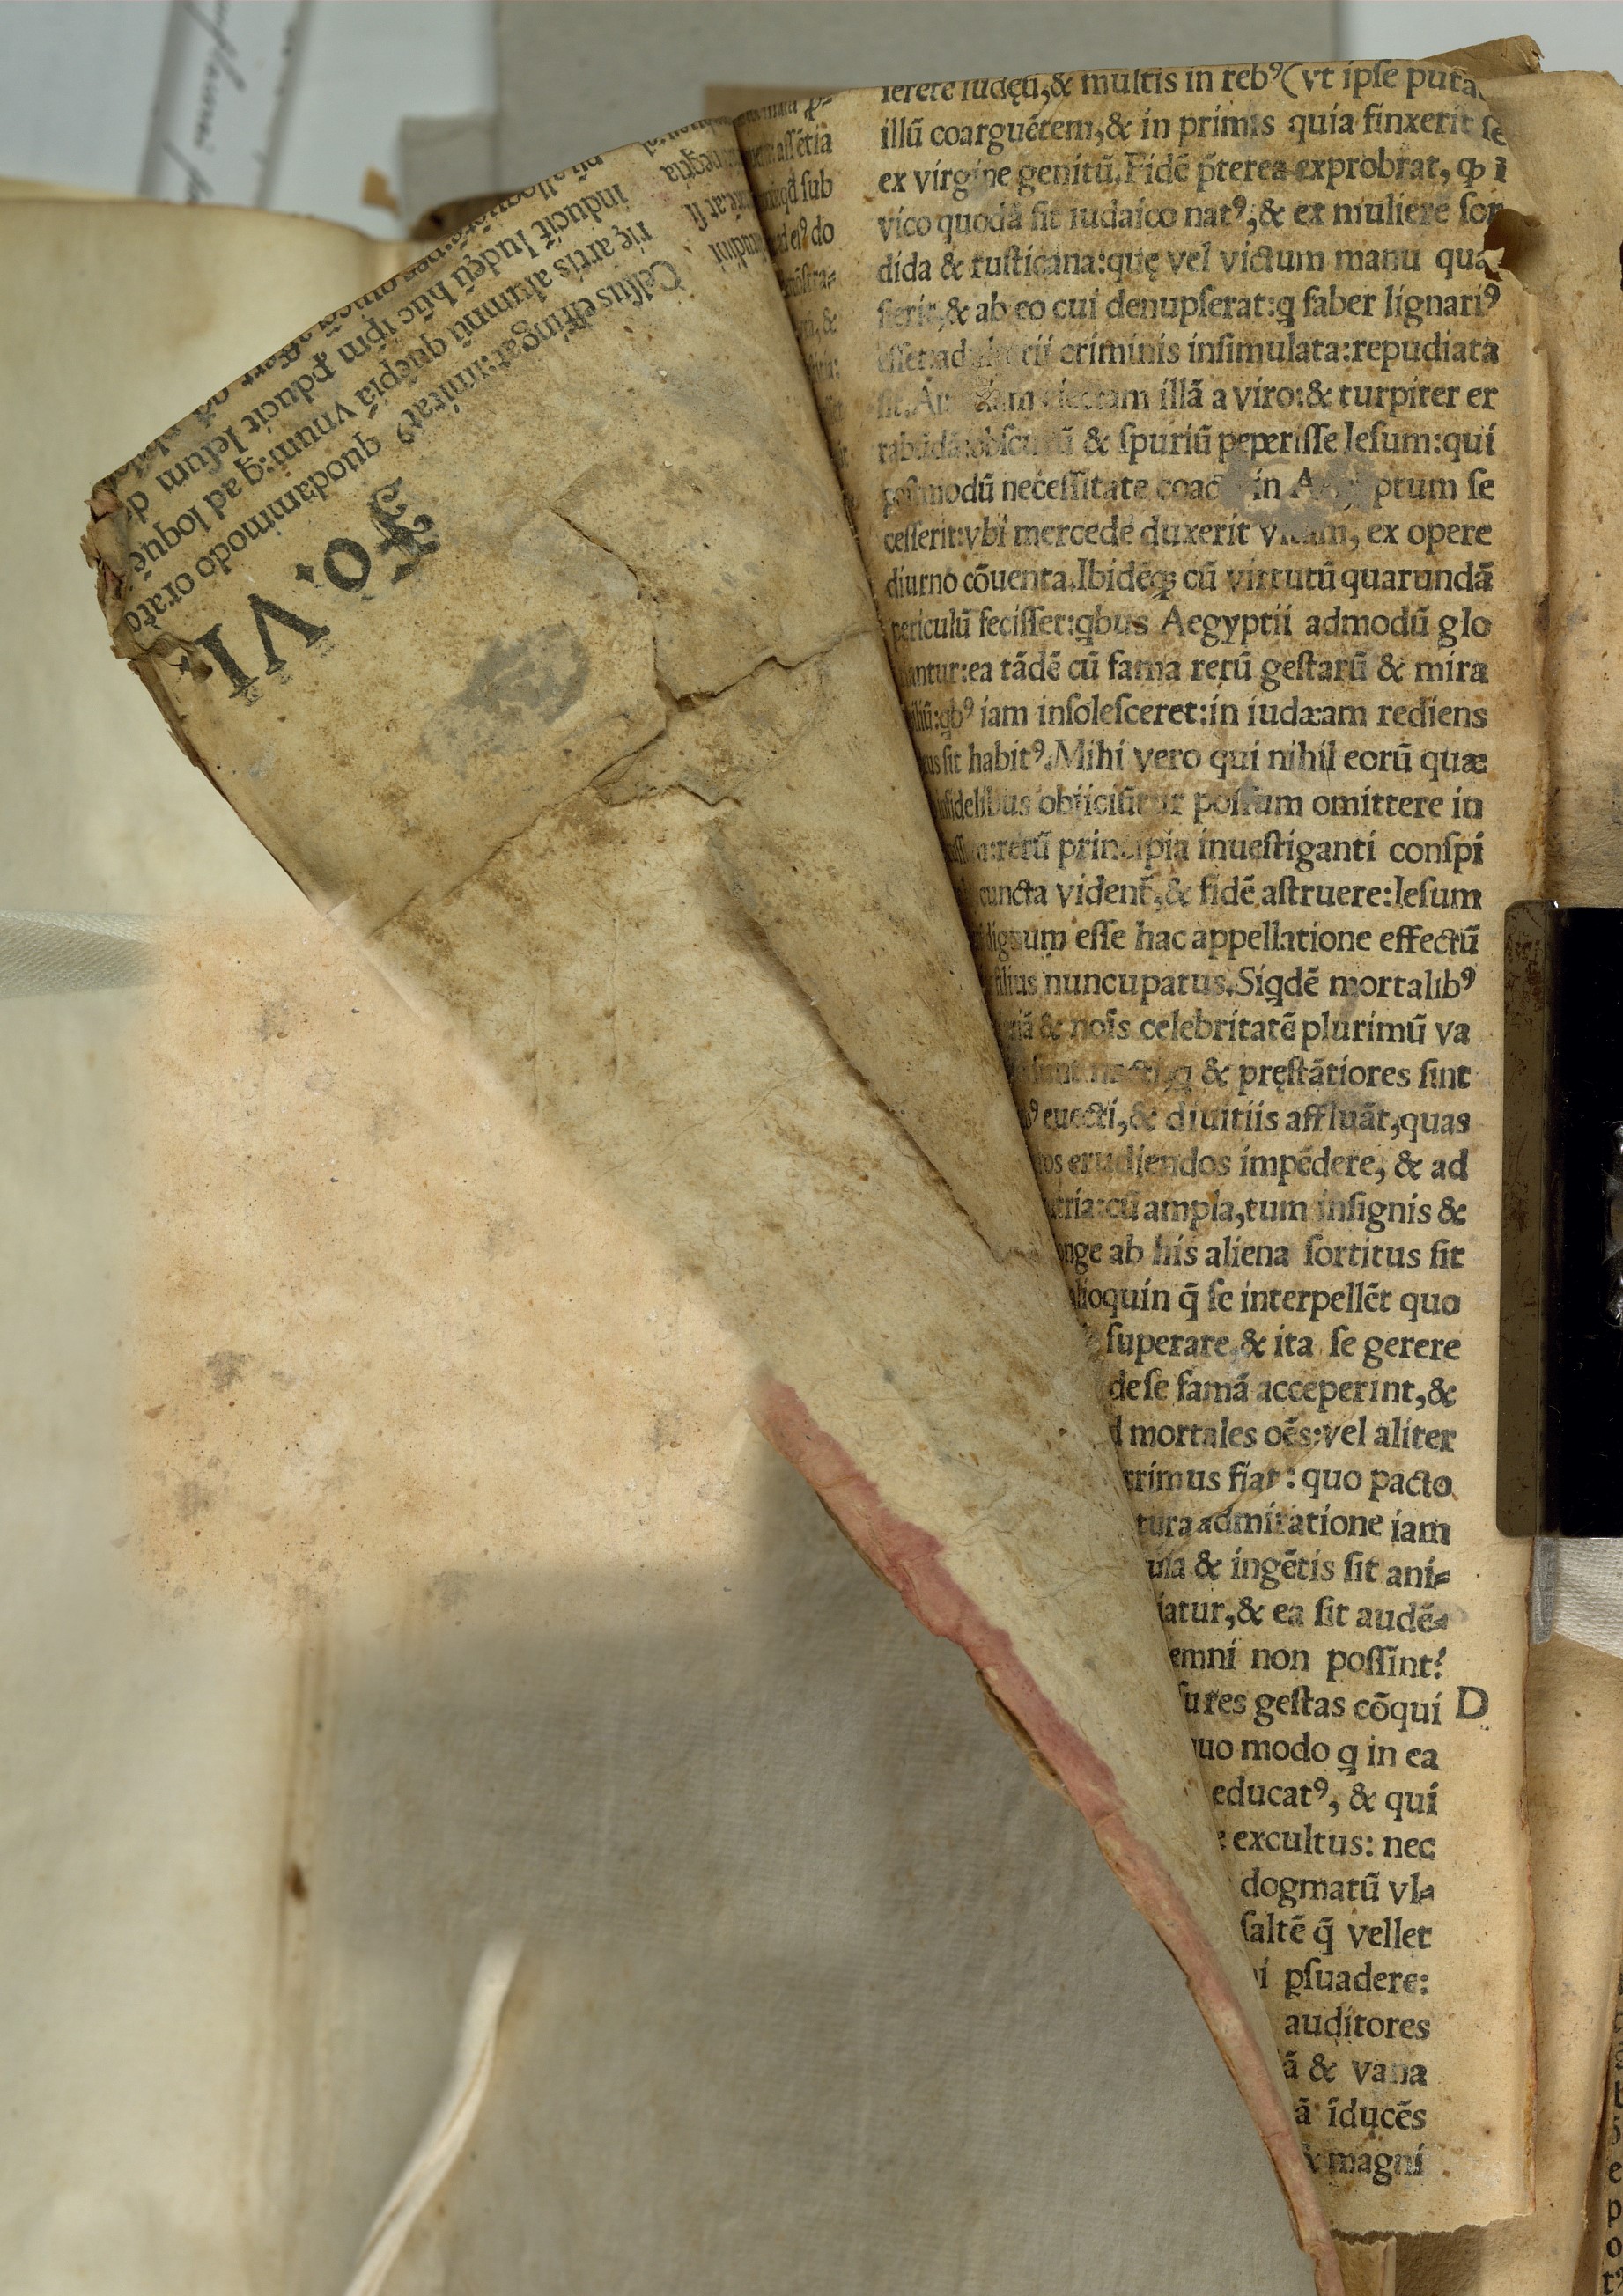 Färgfoto av slitna gamla tryckta blad som har limmats in i ett bokband.